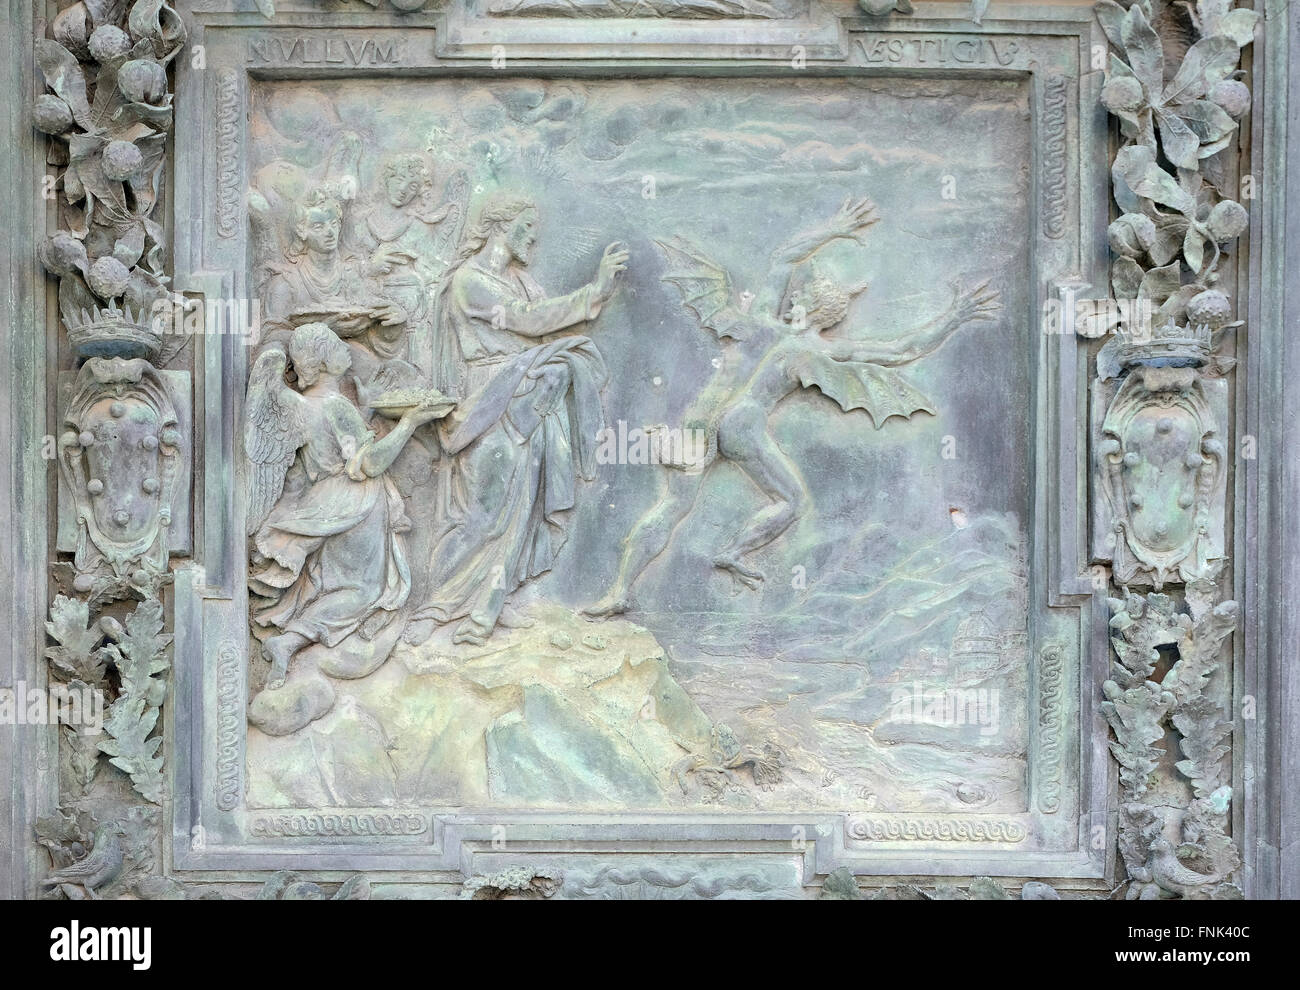 Jésus tenté par le Diable au désert, travail de sculpture de Giambologna's school, Cathédrale de l'assomption de Pise, Italie Banque D'Images